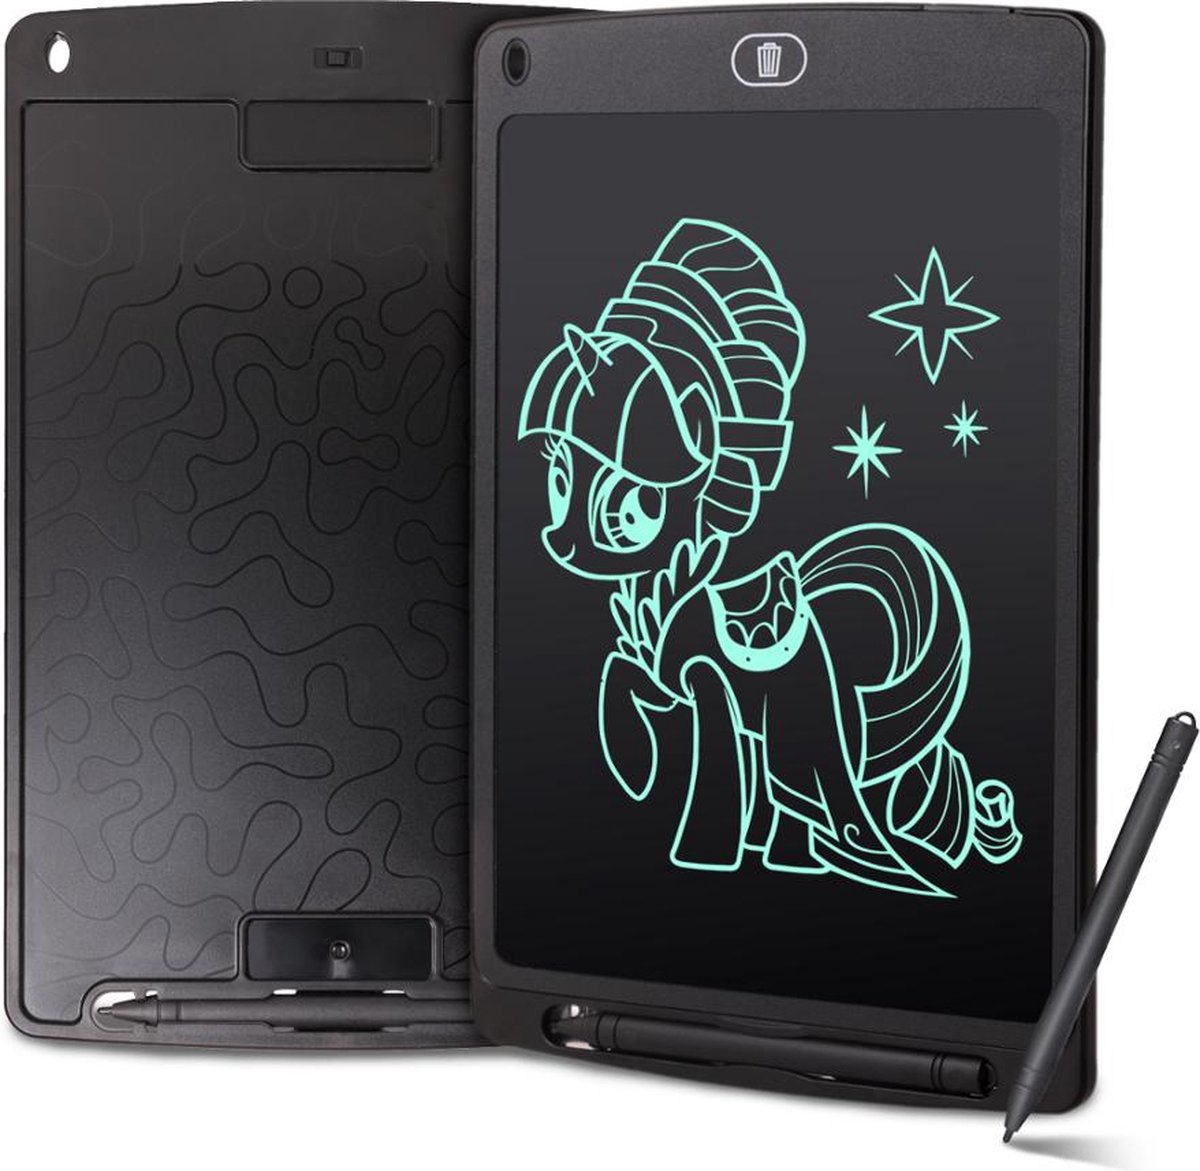 FEDEC LCD Tekentablet 10 inch - Kleurenscherm - Met Pen - Tekenbord - Grafische Tablet - Zwart